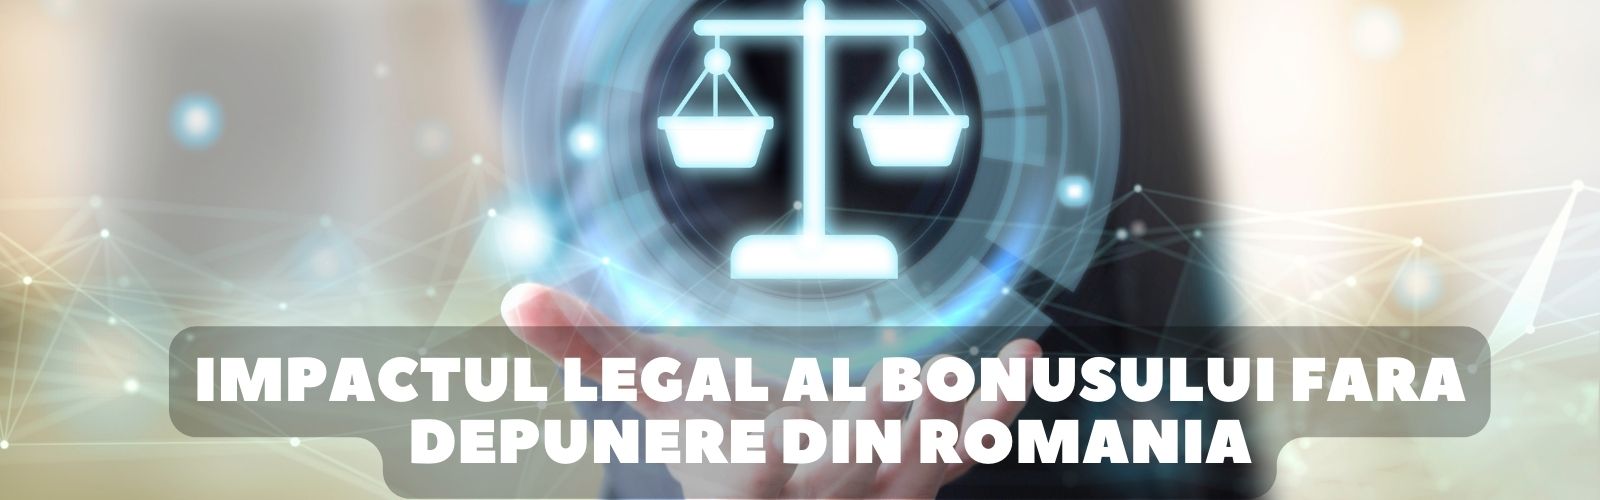 impactul legal al bonusului fara depunere in Romania